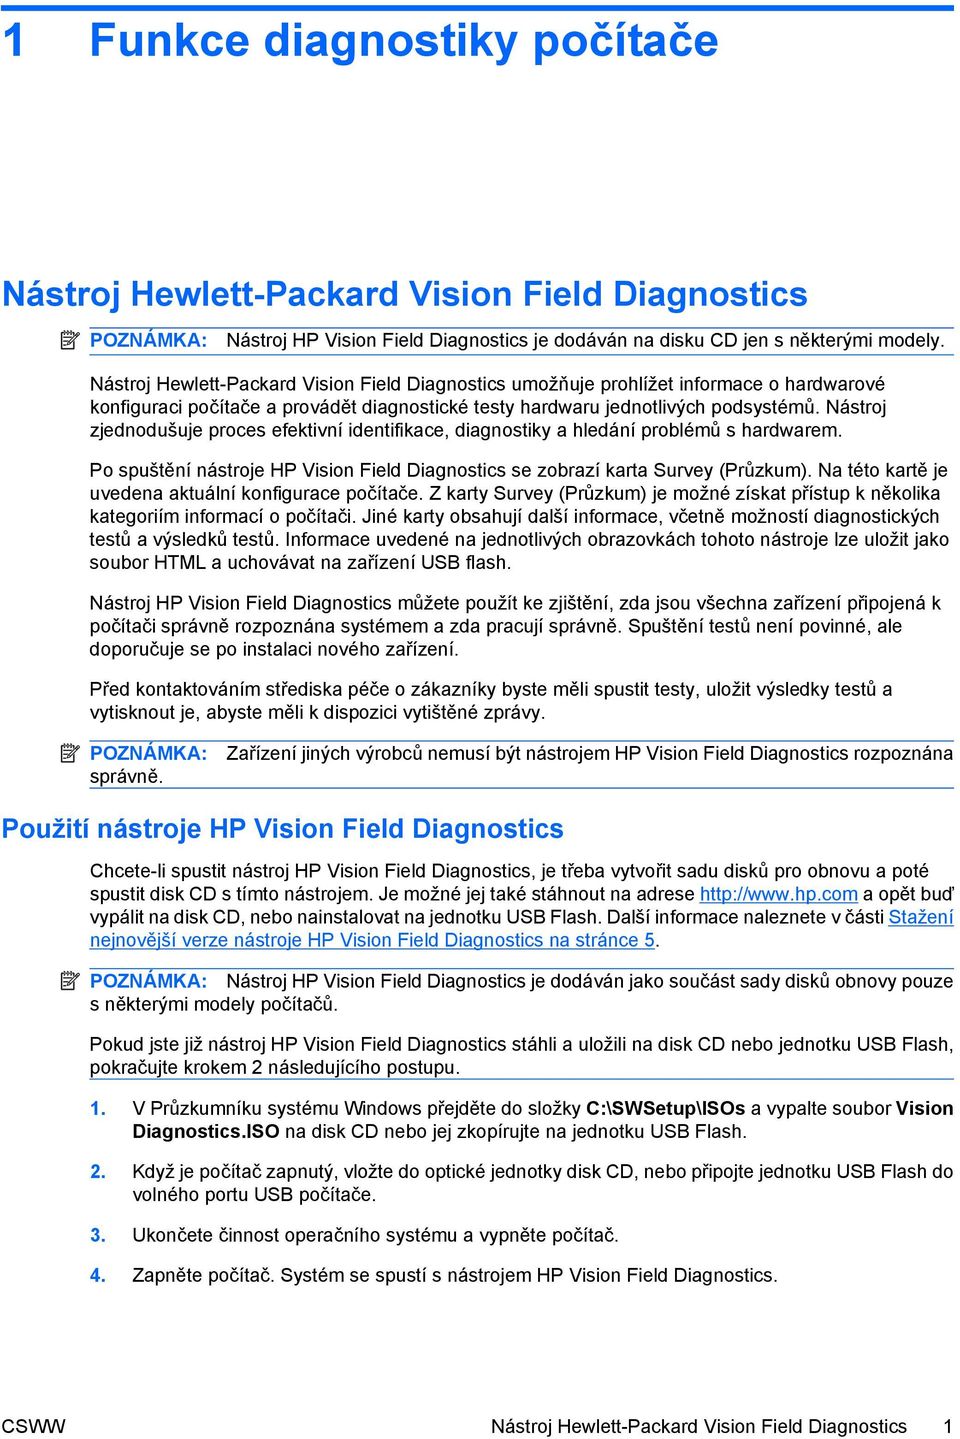 Nástroj zjednodušuje proces efektivní identifikace, diagnostiky a hledání problémů s hardwarem. Po spuštění nástroje HP Vision Field Diagnostics se zobrazí karta Survey (Průzkum).